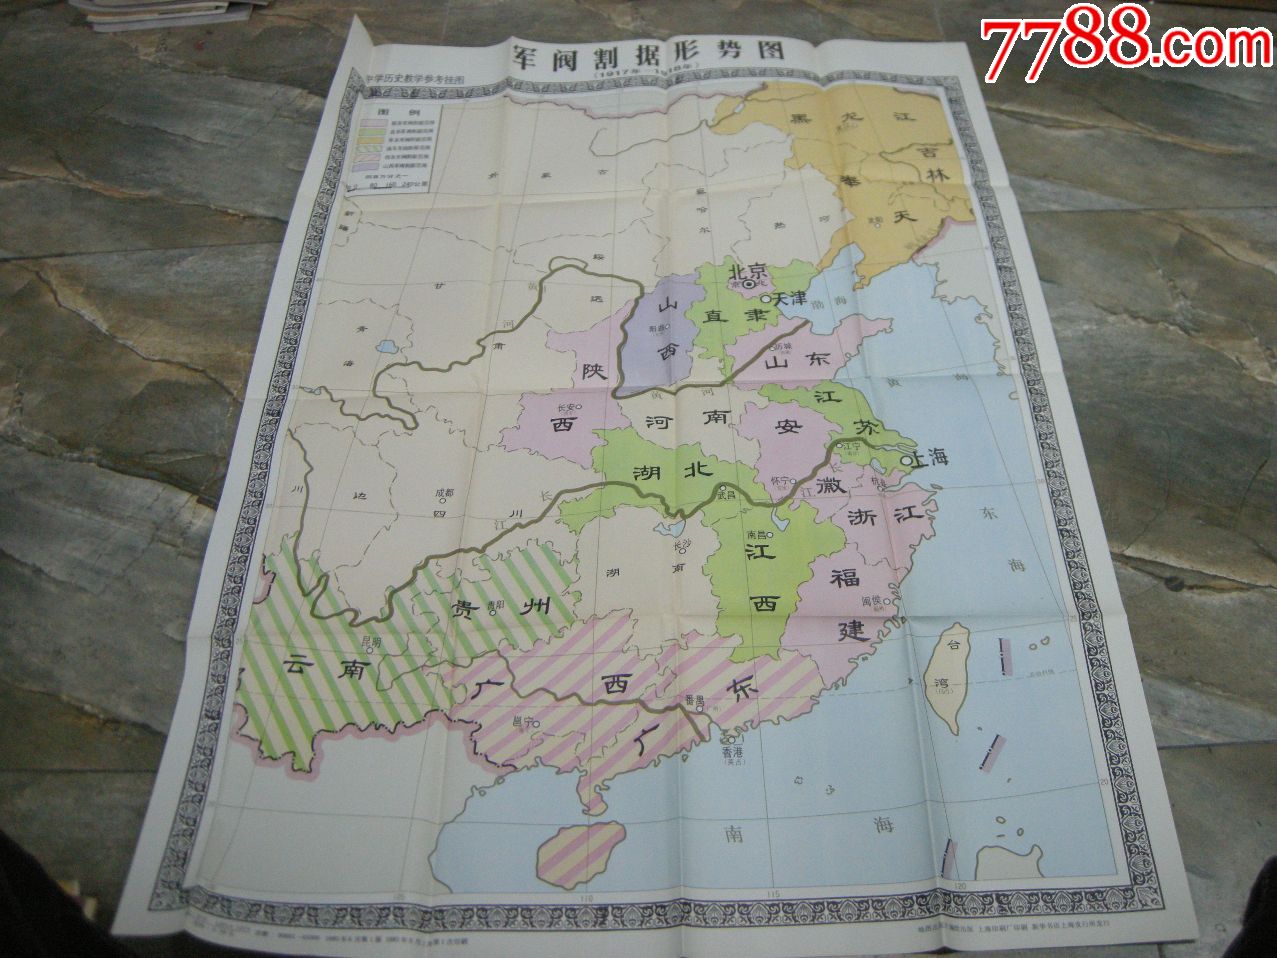 50年代地图,挂图;1981年一版一印《军阀割据形势图》